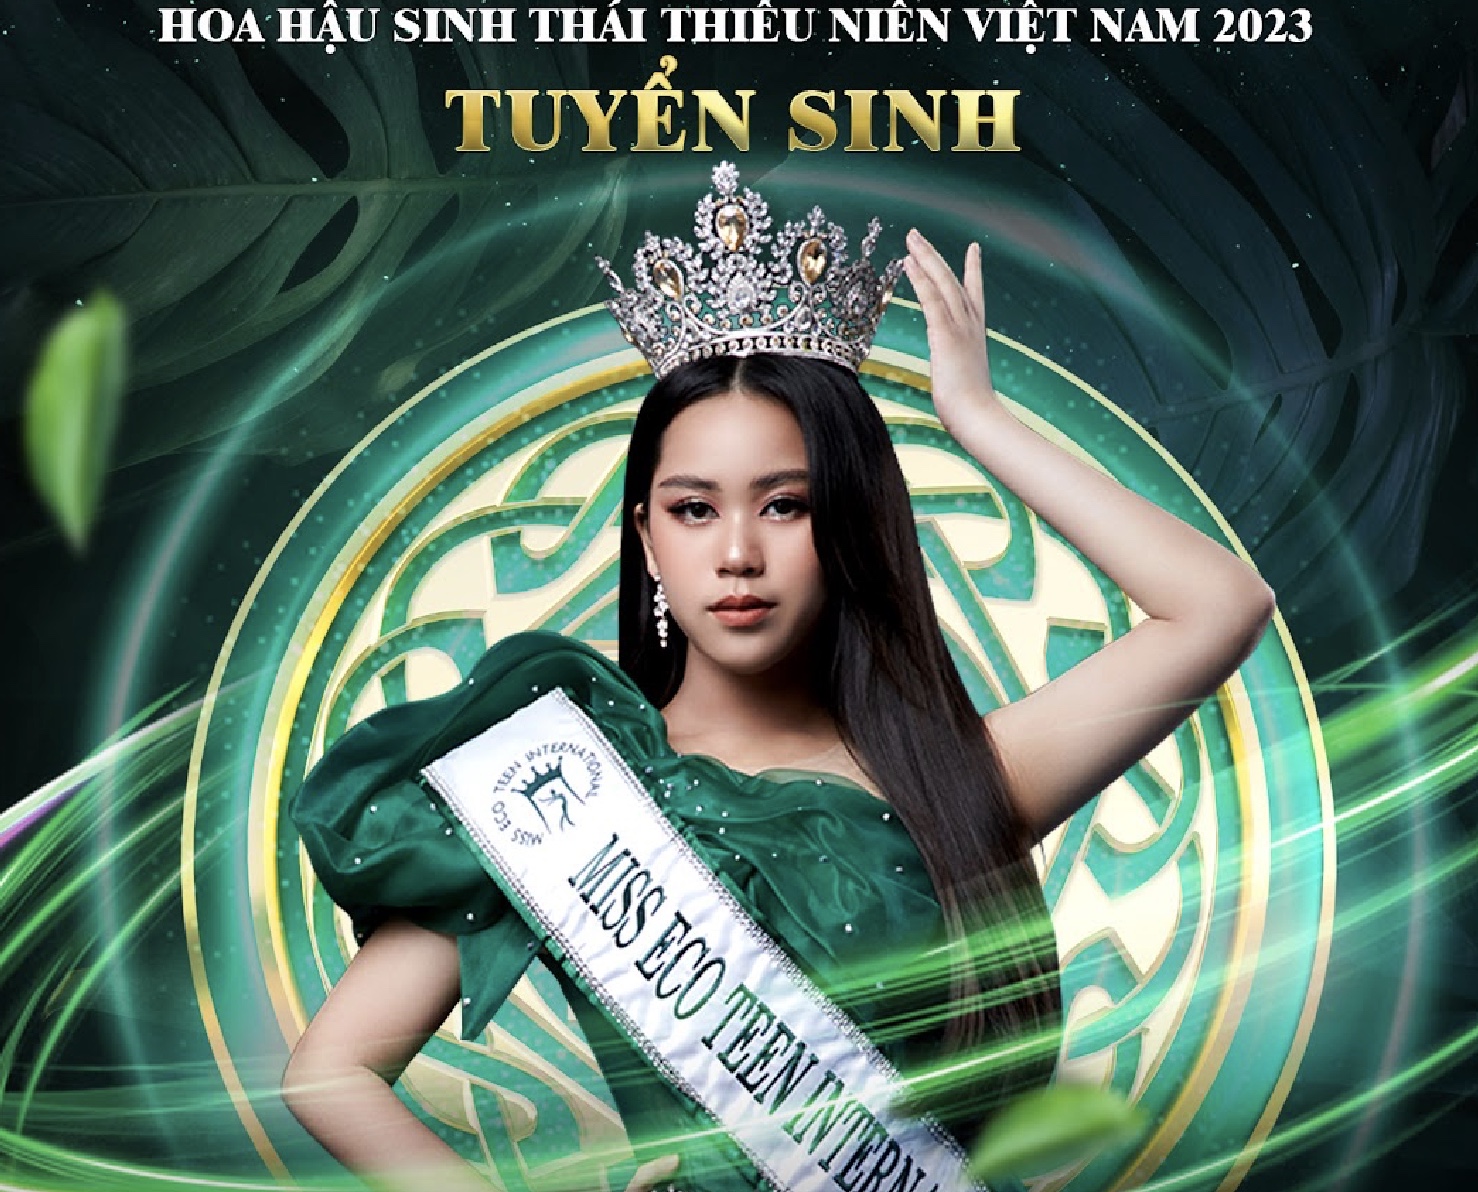 Tỉnh Đồng Nai đề nghị làm rõ tranh chấp bản quyền tên gọi cuộc thi Hoa hậu sinh thái Thiếu niên Việt Nam 2023
 - Ảnh 1.